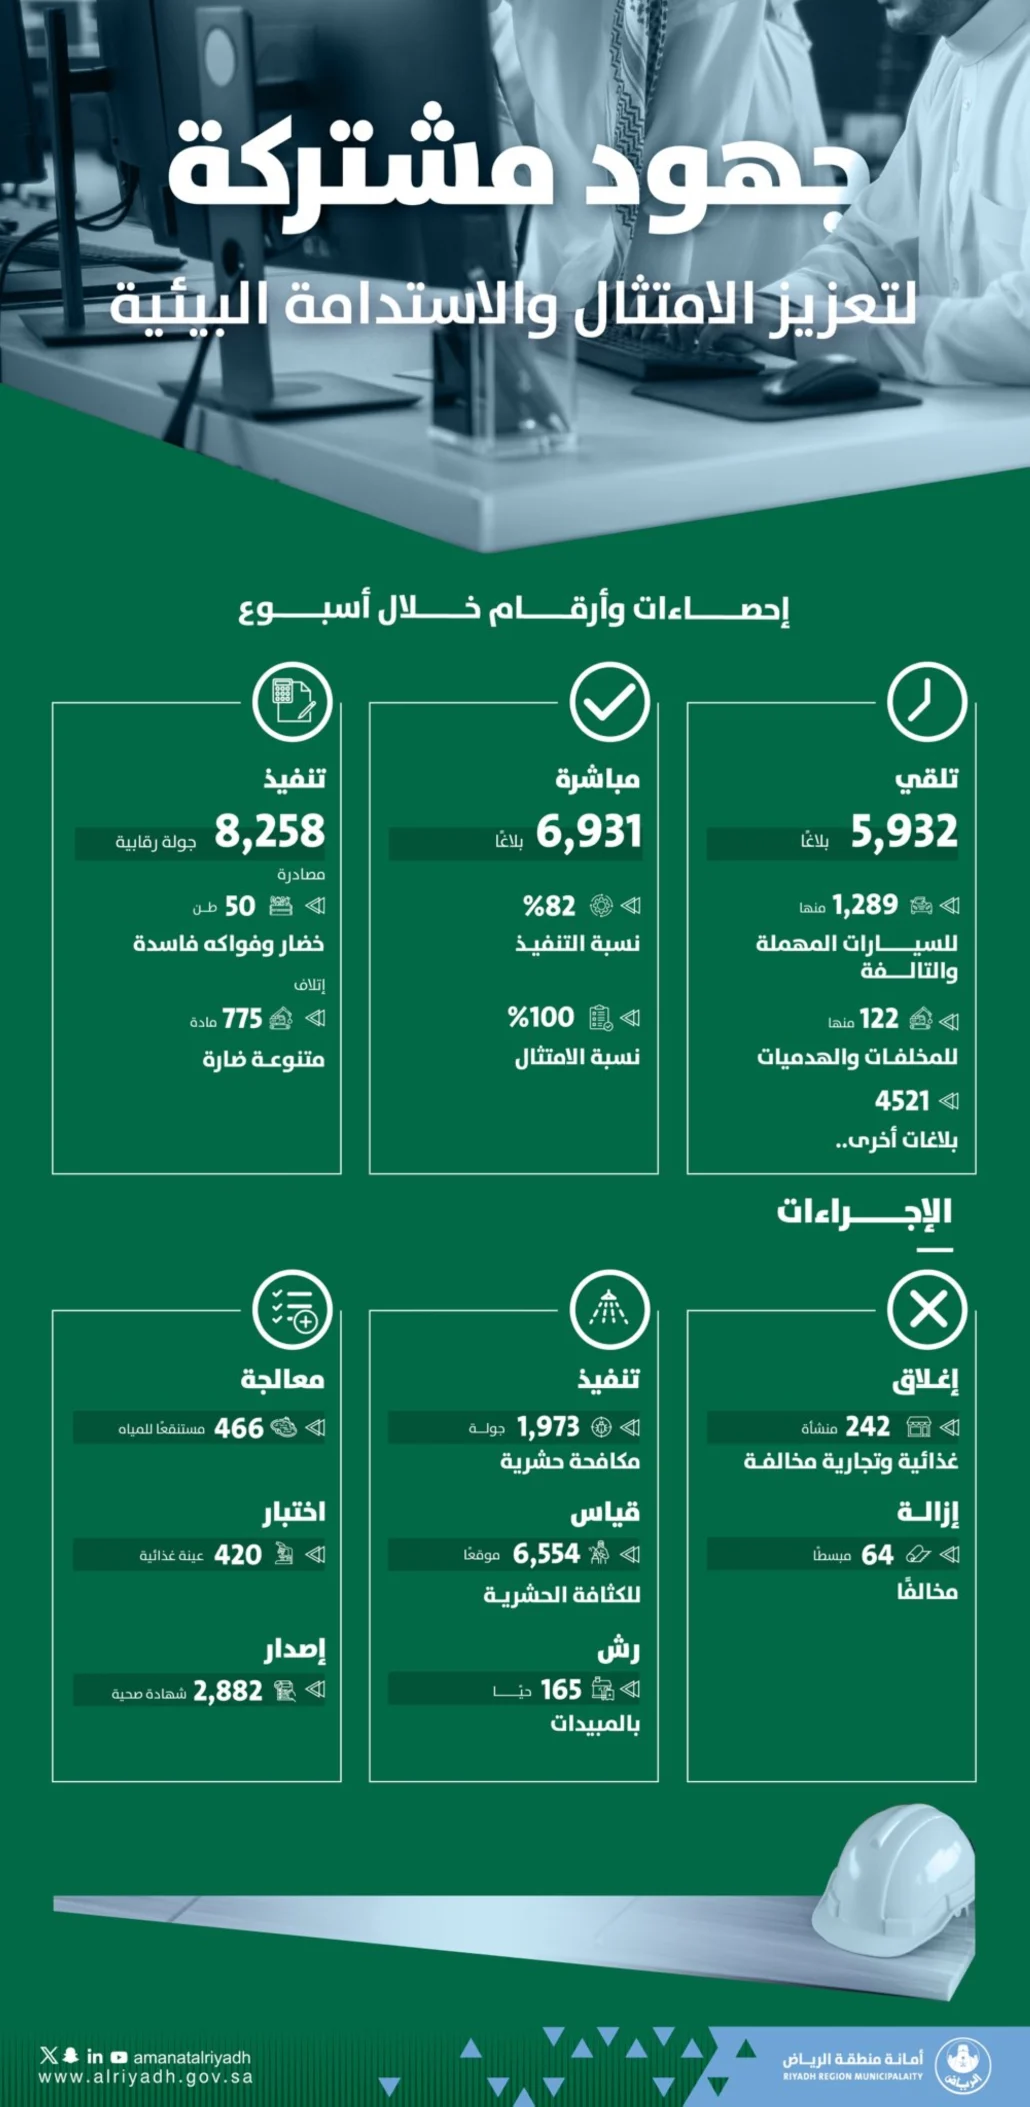 8,258 جولة رقابية لـ "أمانة الرياض"